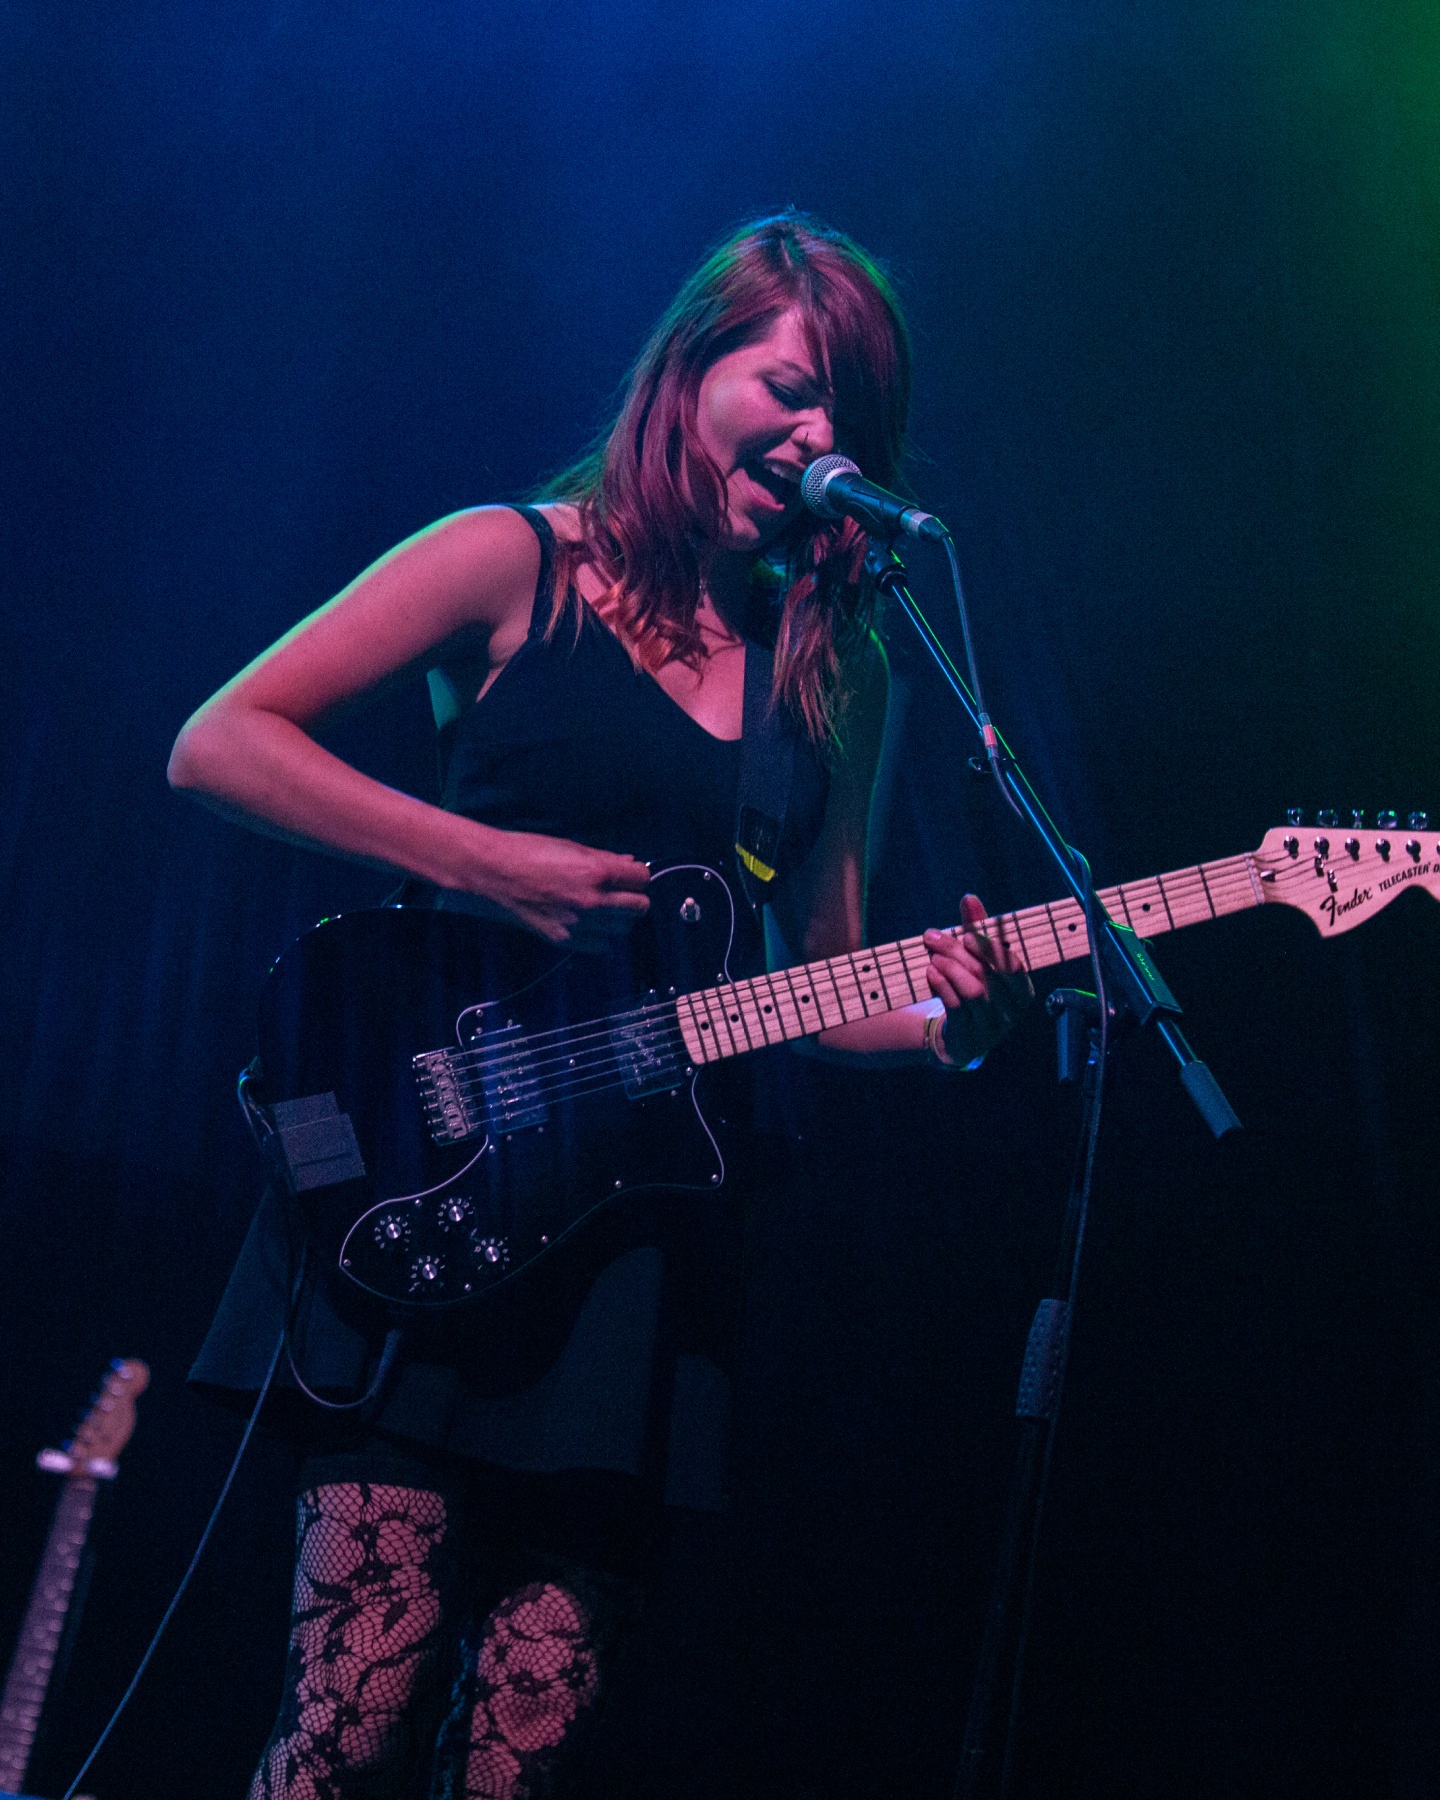 Una imagen que muestra a Rews actuando en un escenario con una guitarra